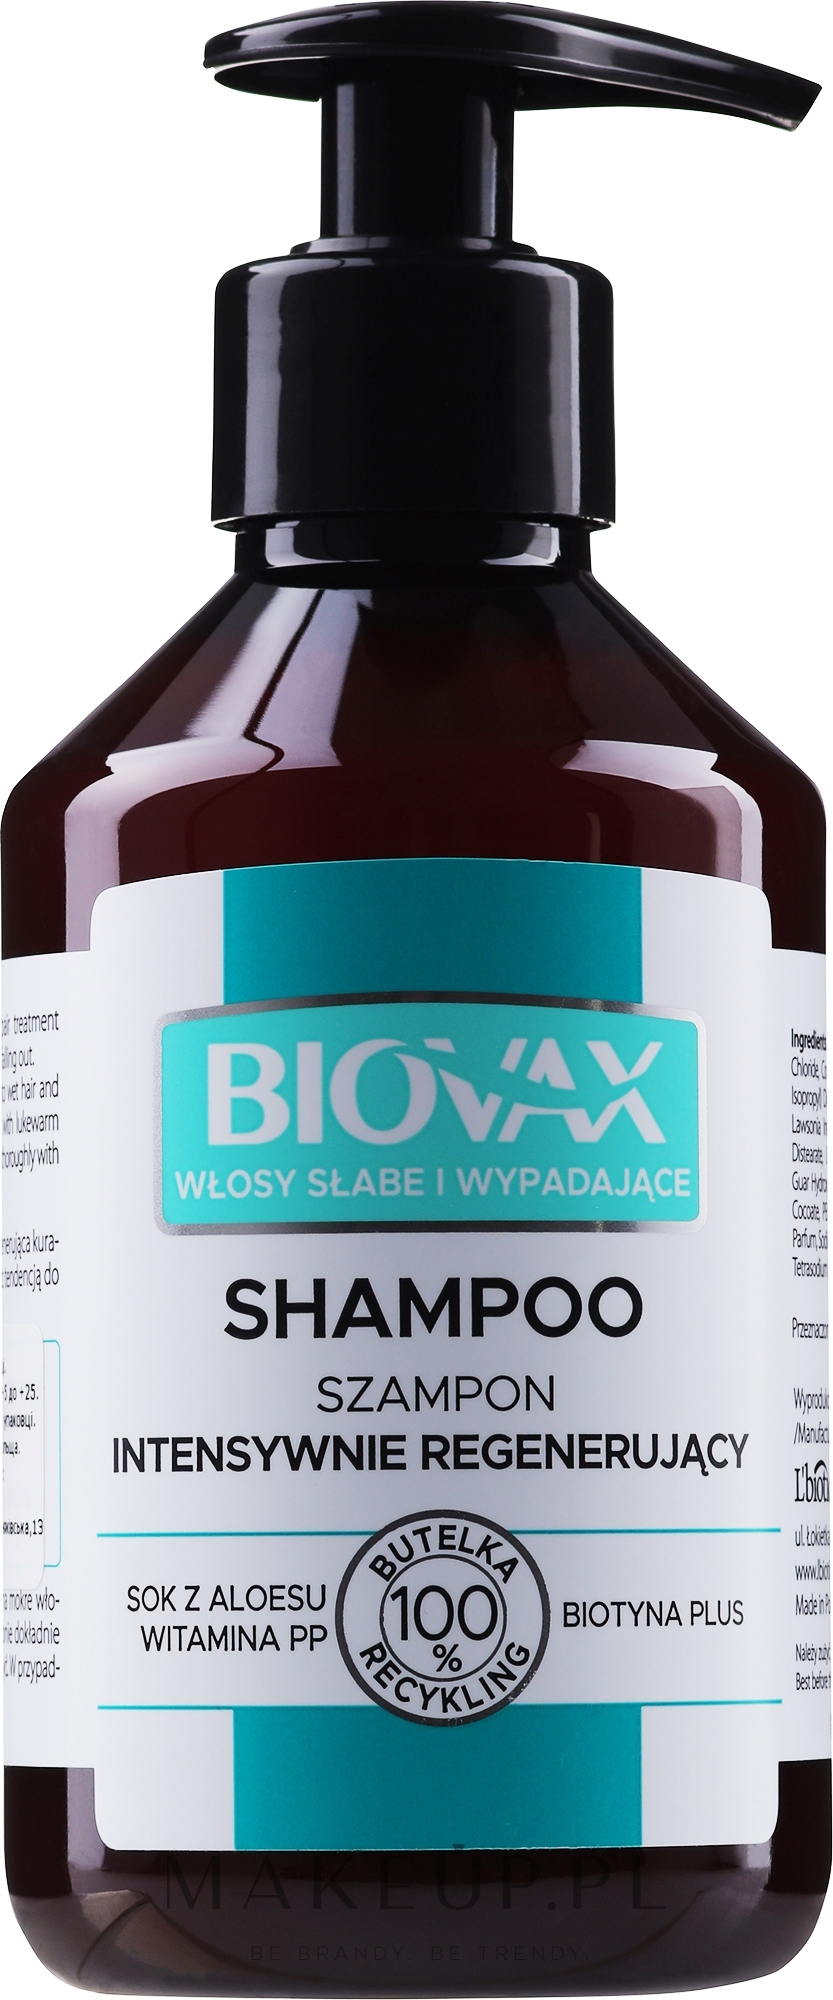 over zoo szampon allegro